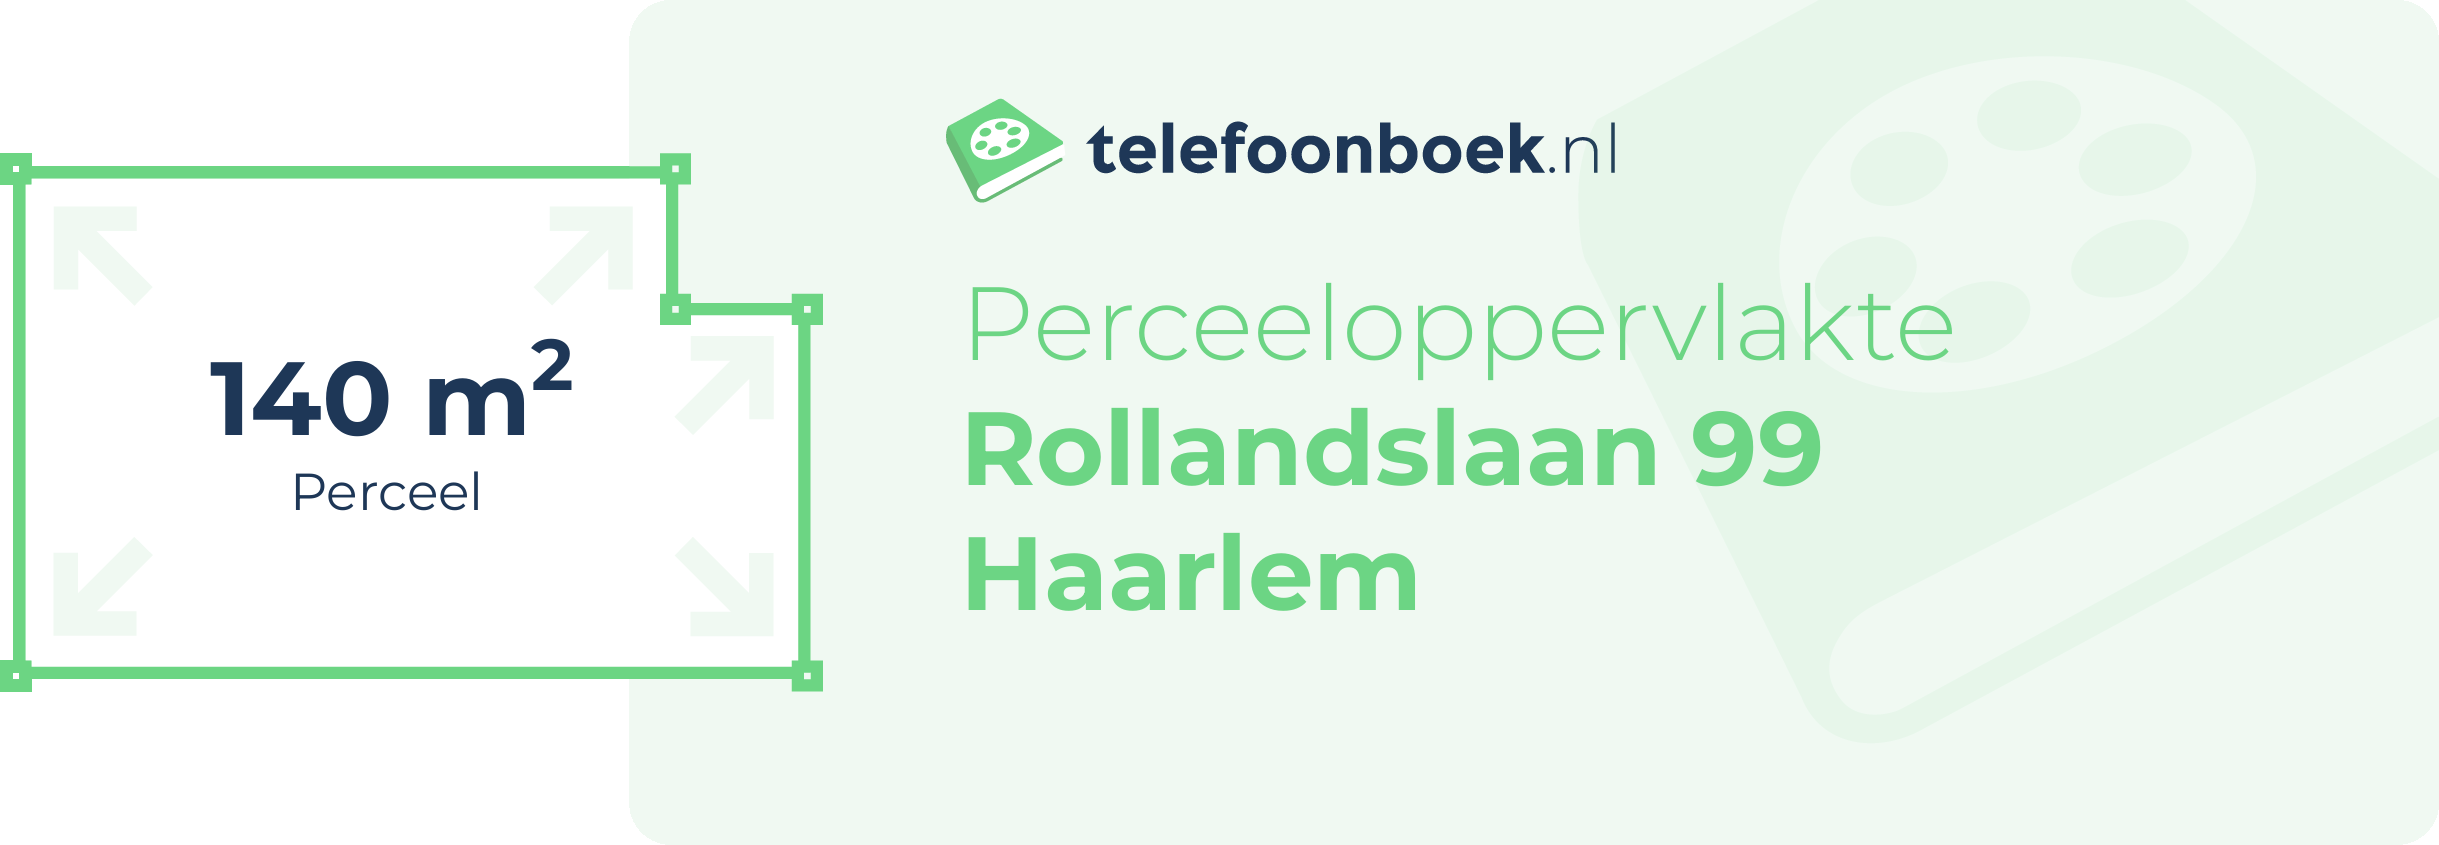 Perceeloppervlakte Rollandslaan 99 Haarlem